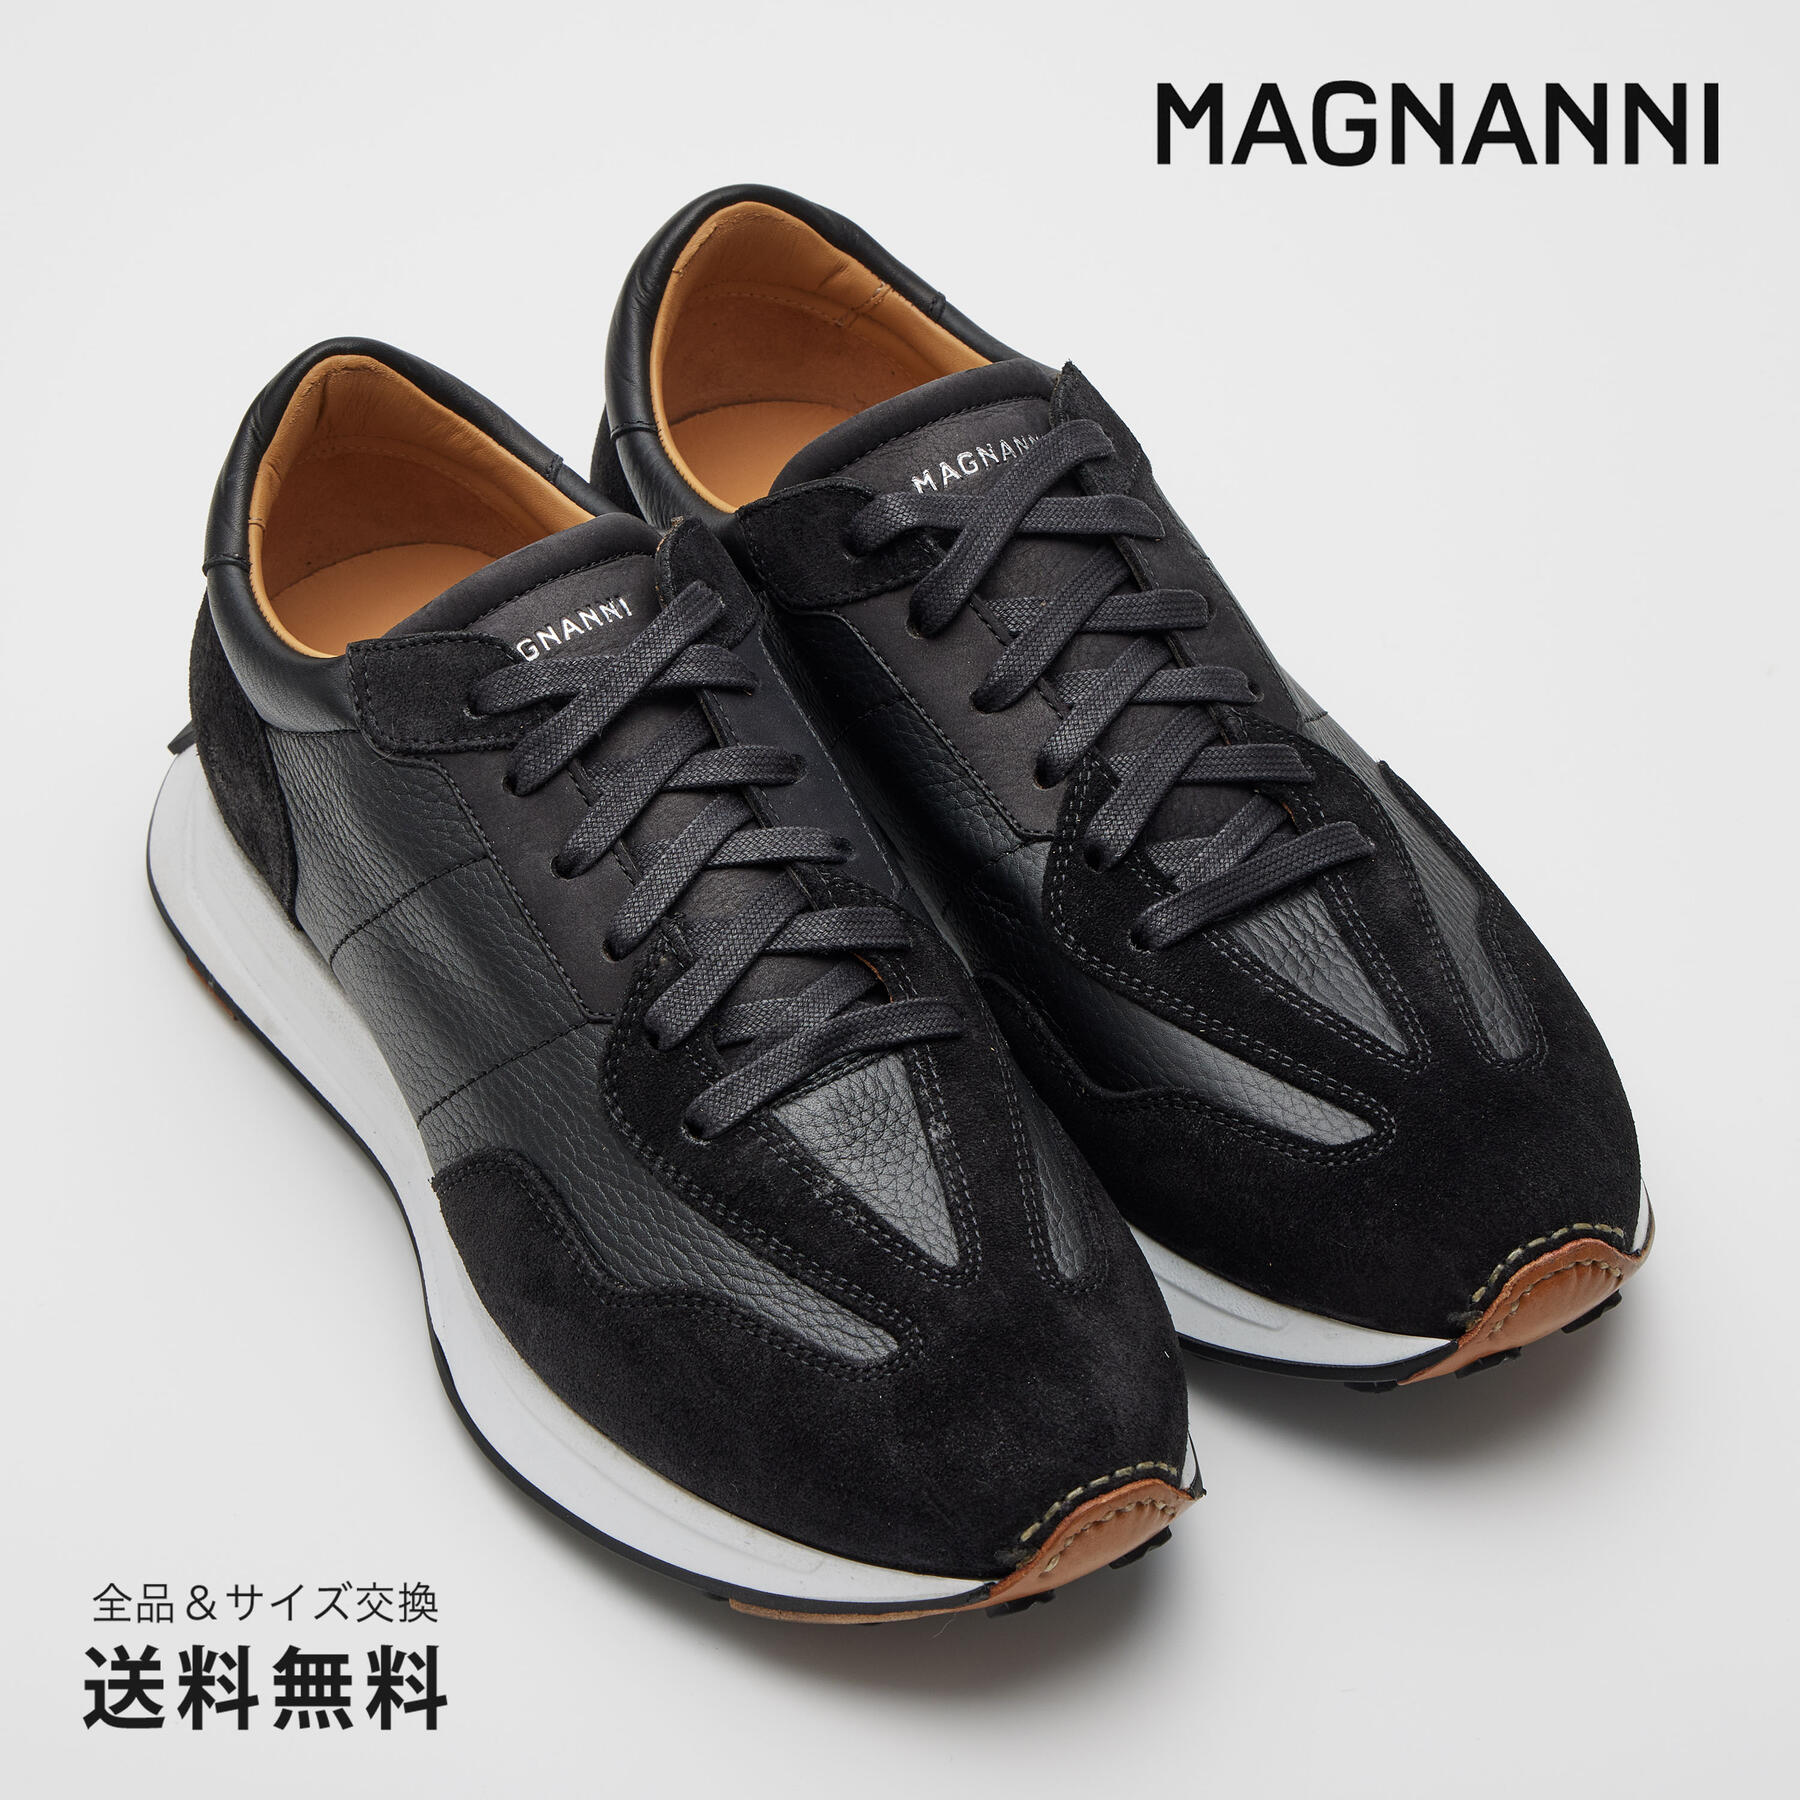 【公式】MAGNANNI マグナーニ スニーカートレッドランナーソールトレイナー ブラック 黒 25125 BL スペイン 靴 メンズ靴 カジュアルシューズ サイズ 39 - 43 24.5 - 27.0cm 2023 S/S 春夏 【あす楽】